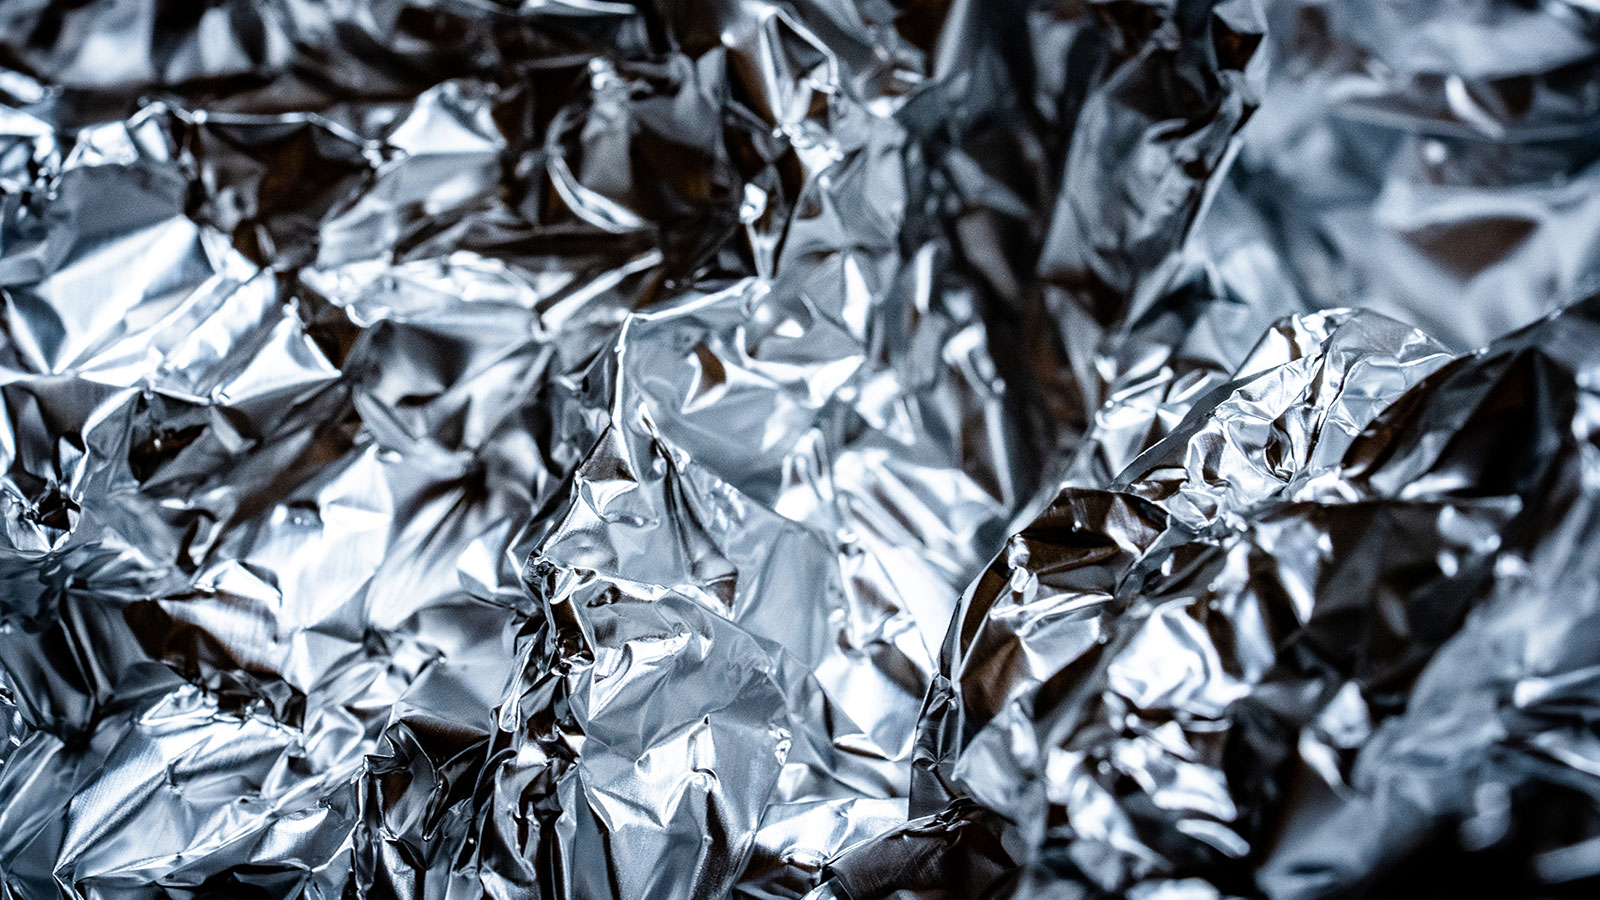 Illegal Secrets - aluminum foil